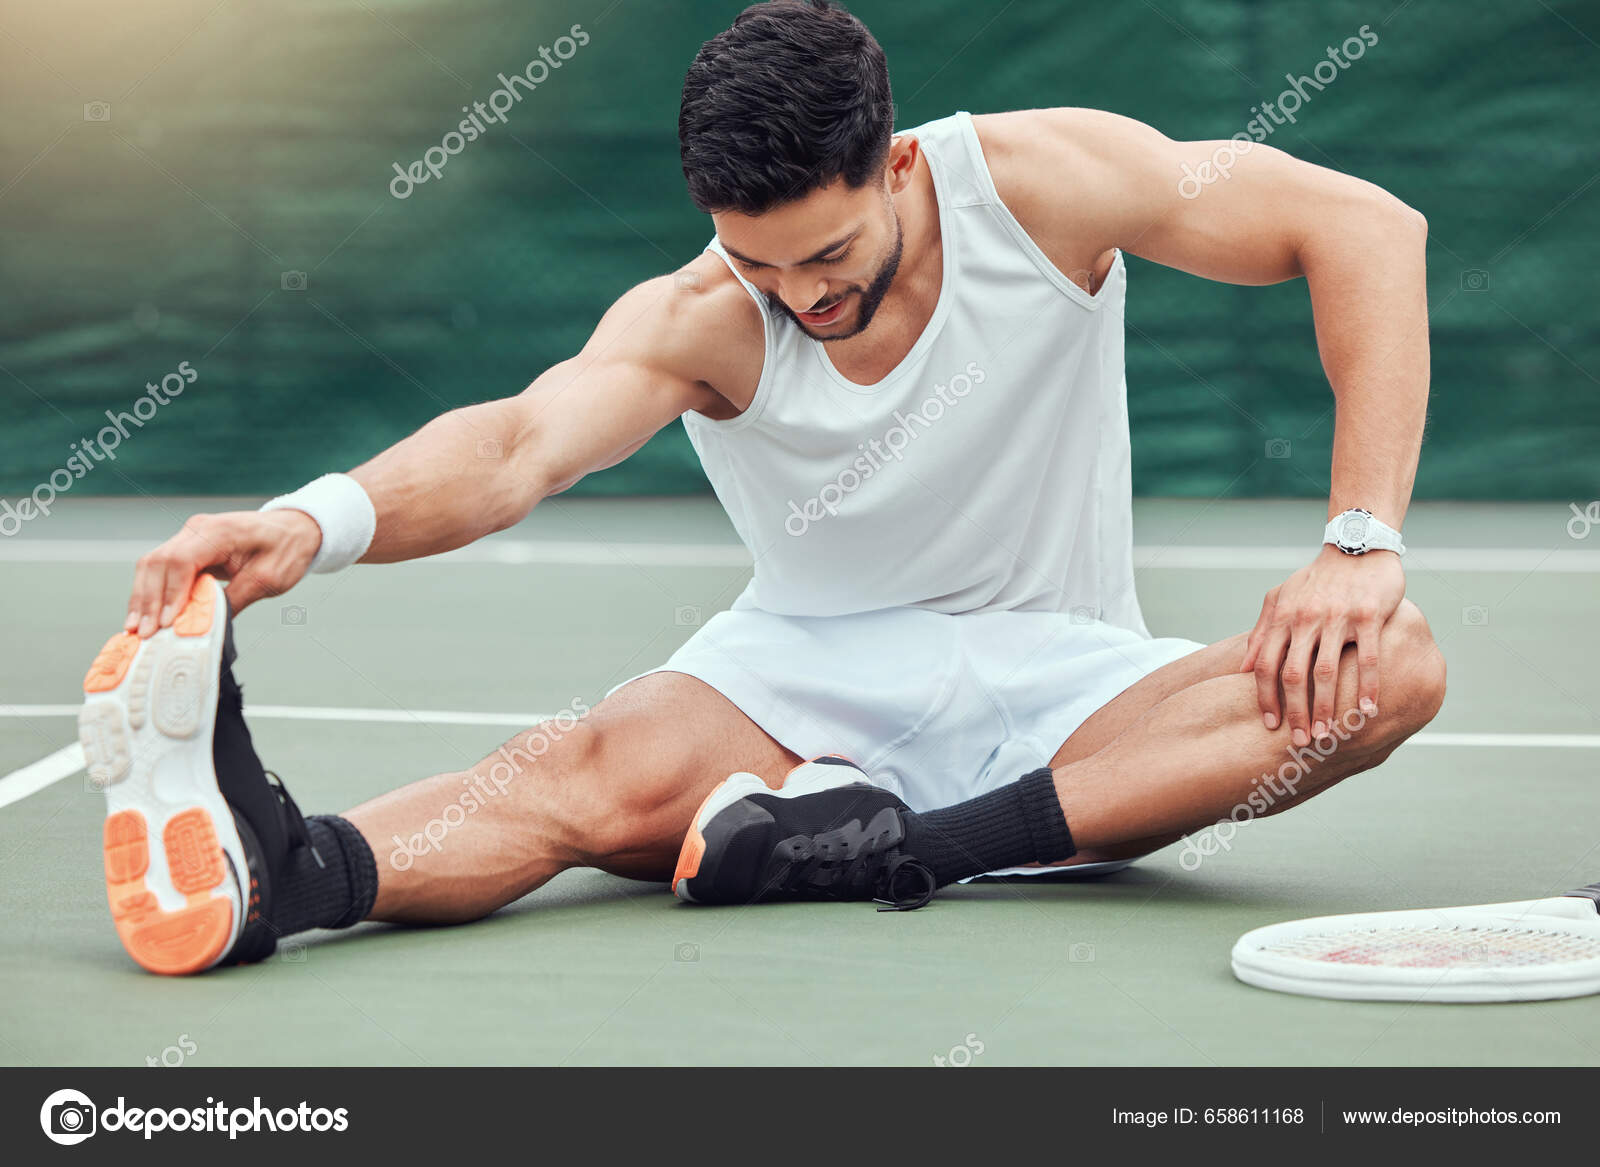 Equipe masculina e retrato em uma quadra de tênis para competição